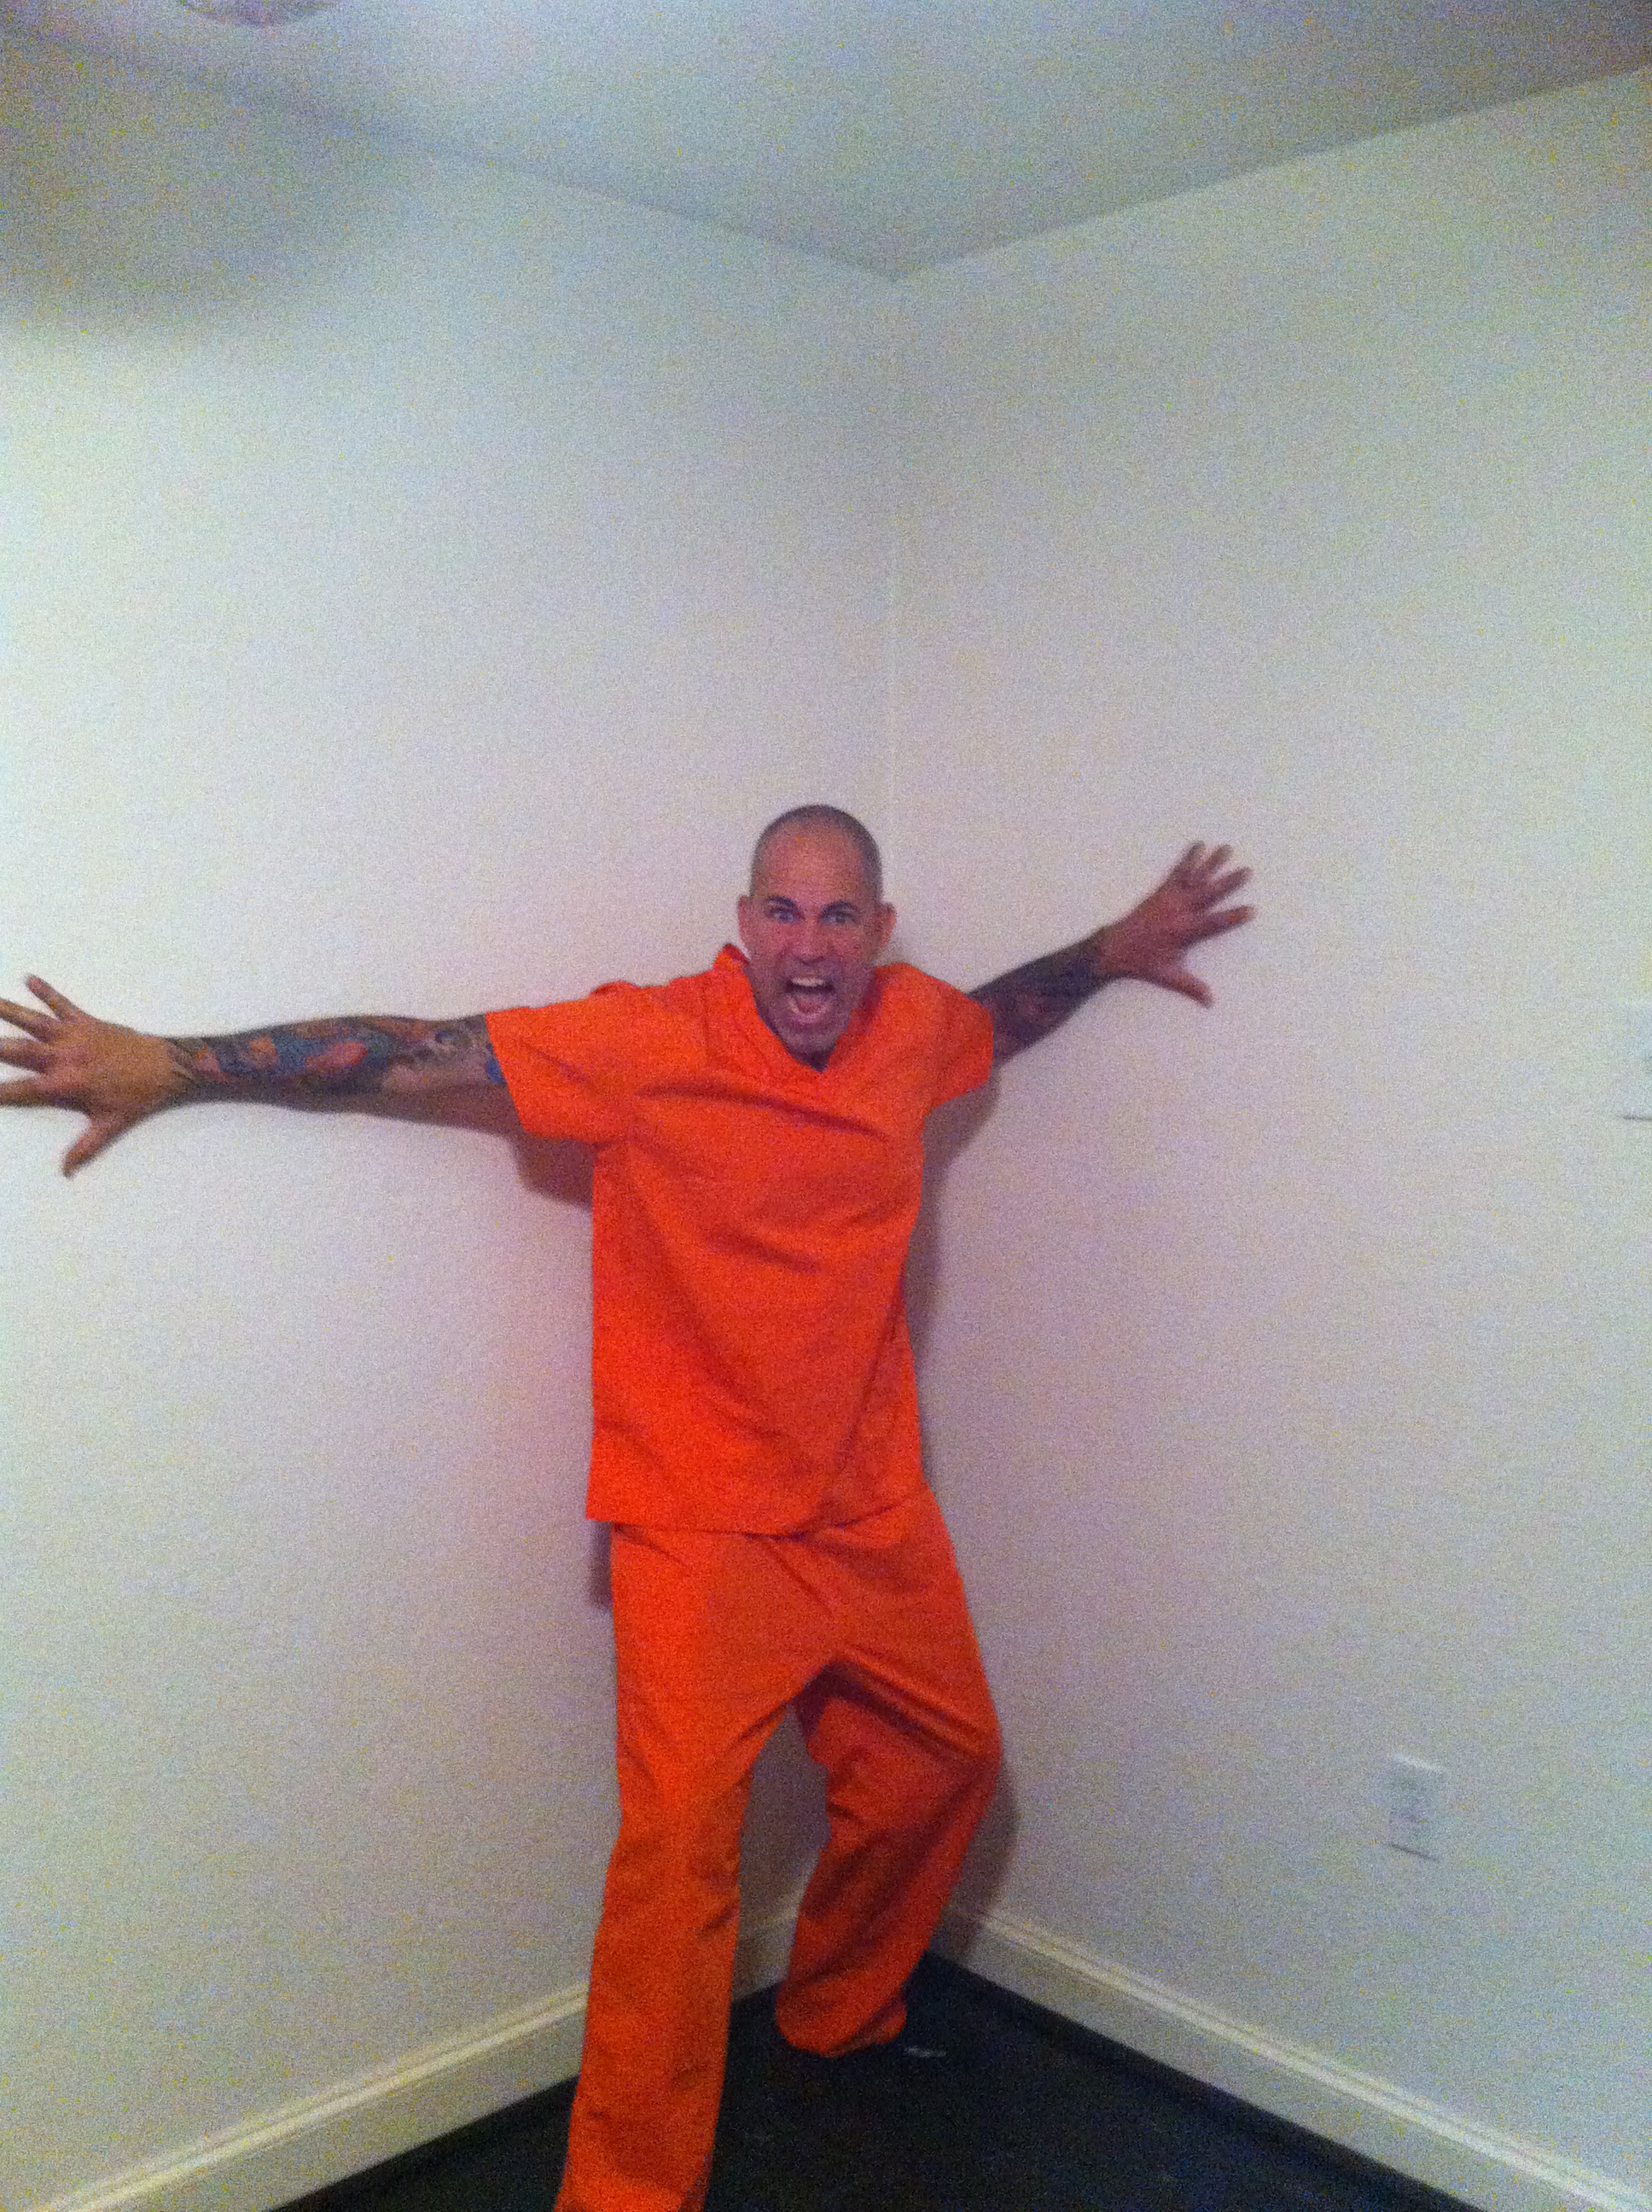 DALLAS episode 7 Inmate